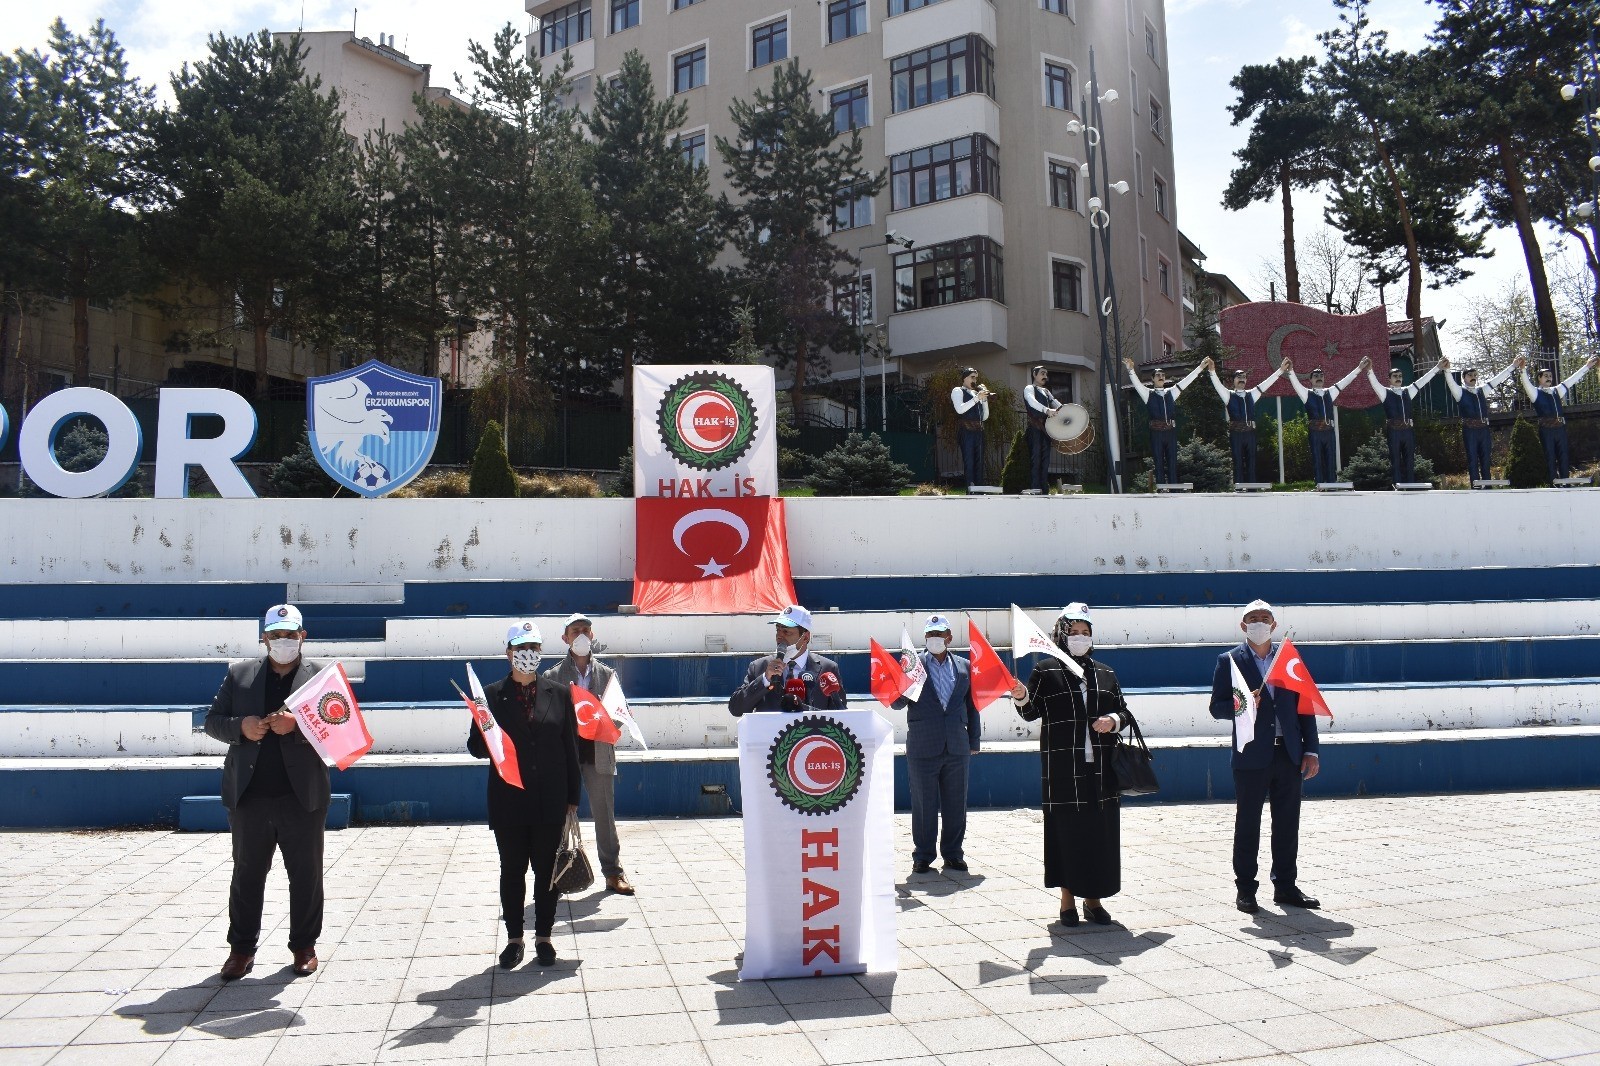 Erzurum’da 7 kişiyle 1 Mayıs açıklaması